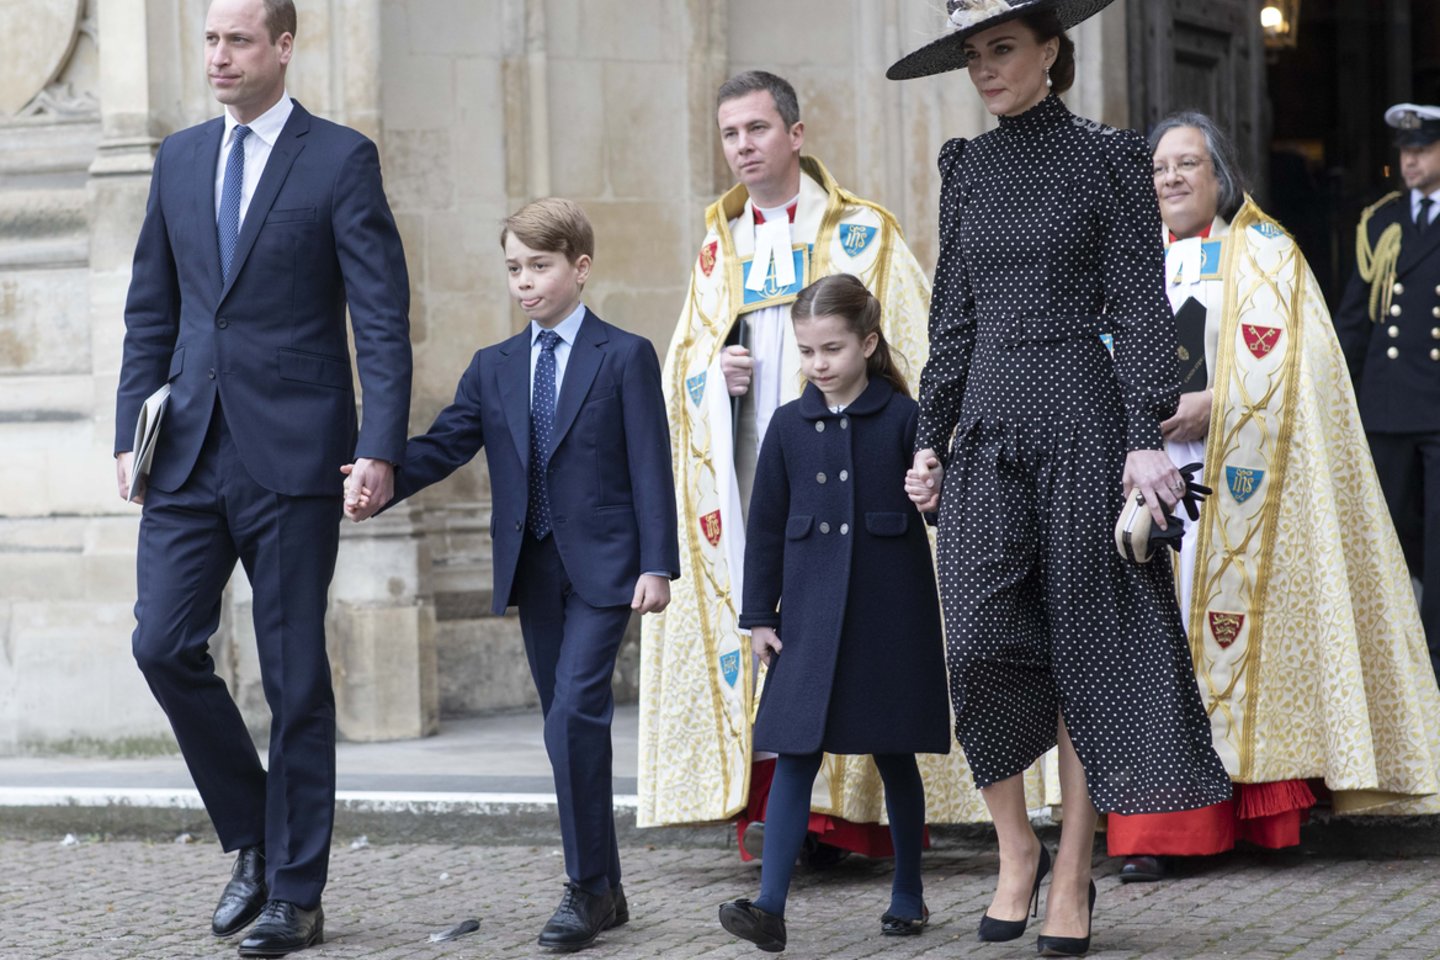  Princas Williamas, Catherine Middleton su vaikais.<br> Scanpix/ZP nuotr.